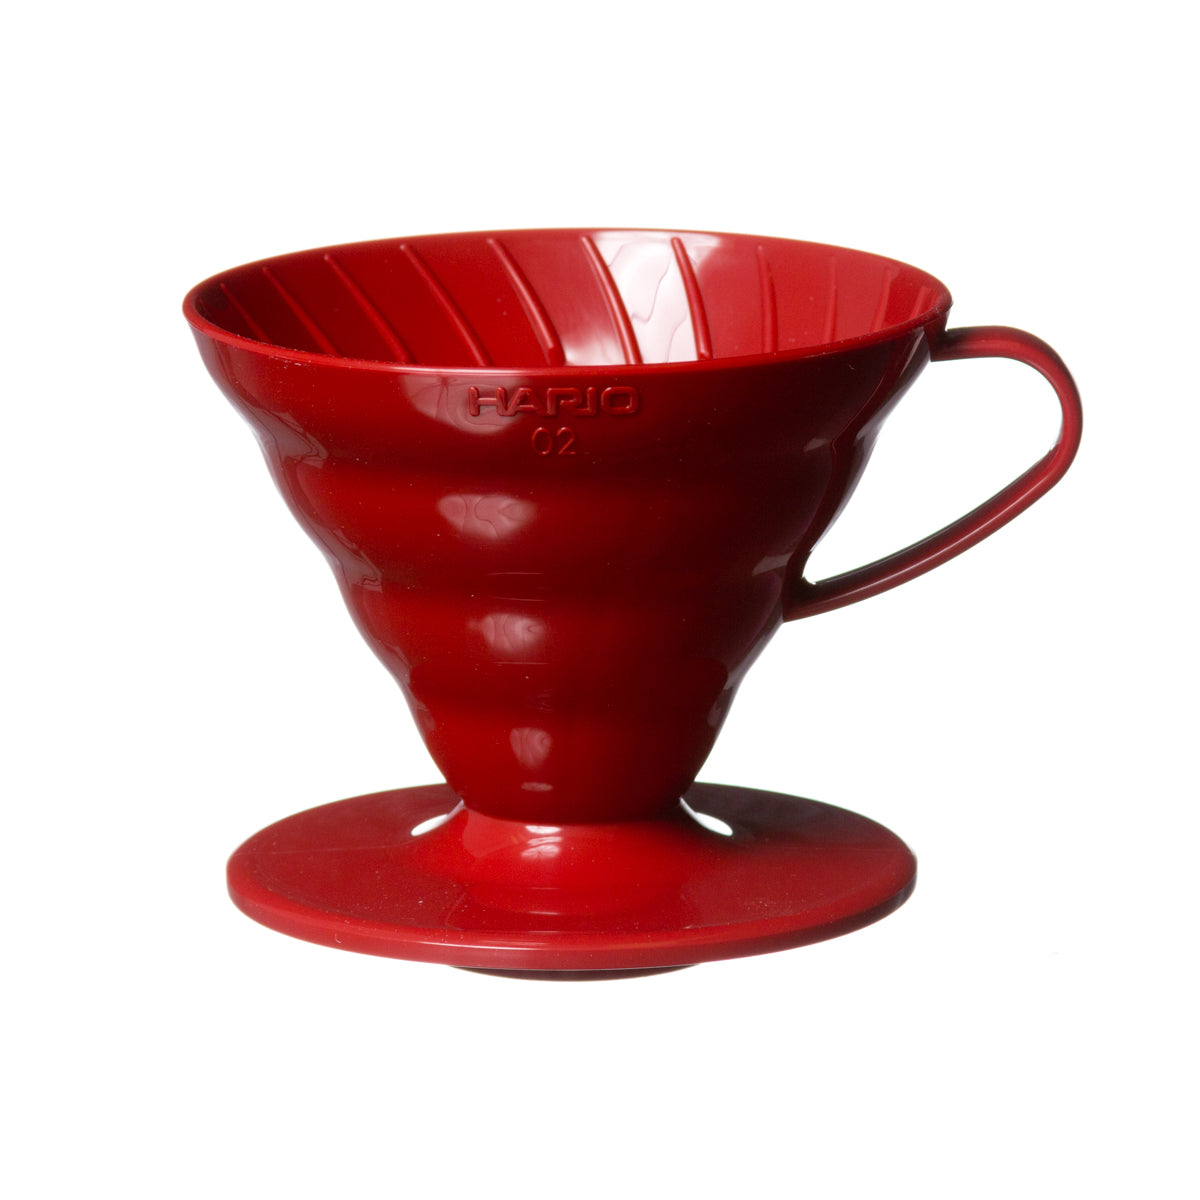 Filtro a goccia per caffè rosso Hario vd-01r coffee dripper v60 01